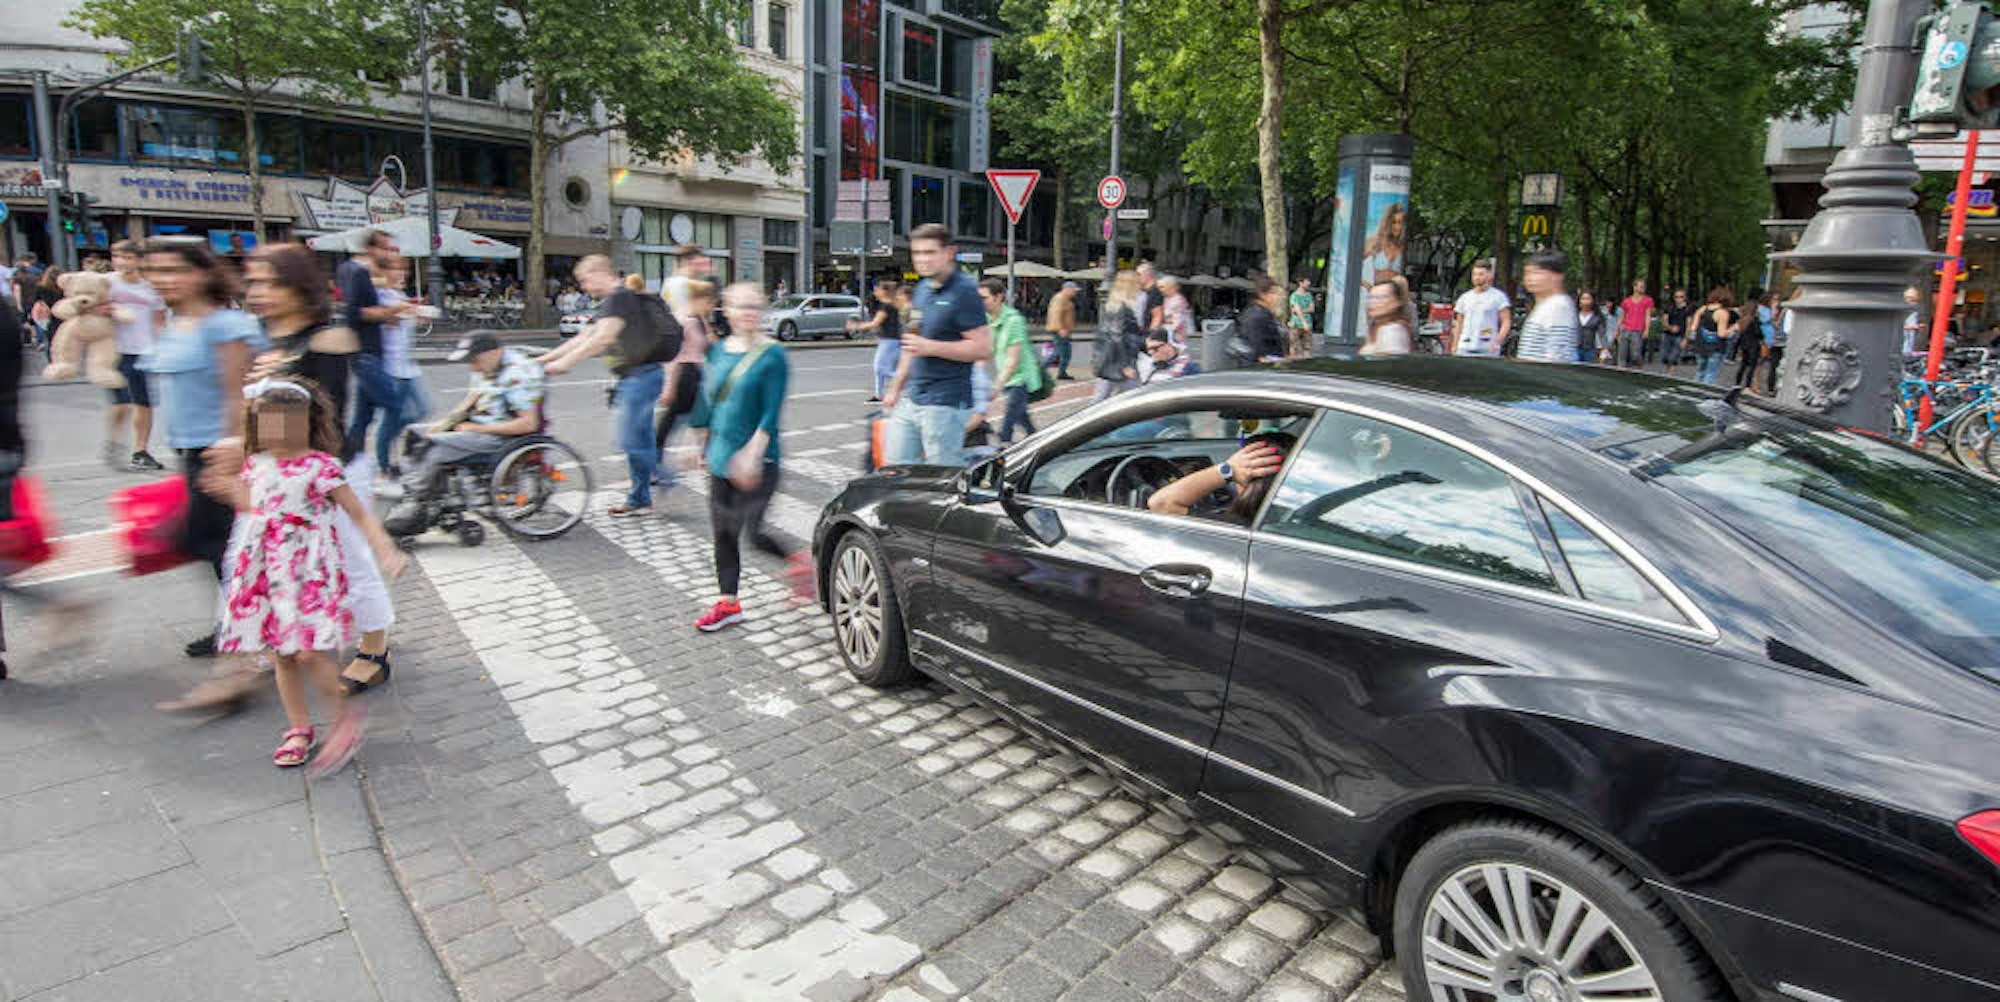 Fußgänger in Köln müssen oft schauen, wo sie bleiben. Zebrastreifen sind im Verkehrschaos oft nicht sicher, Gehwege nicht selten zugeparkt.